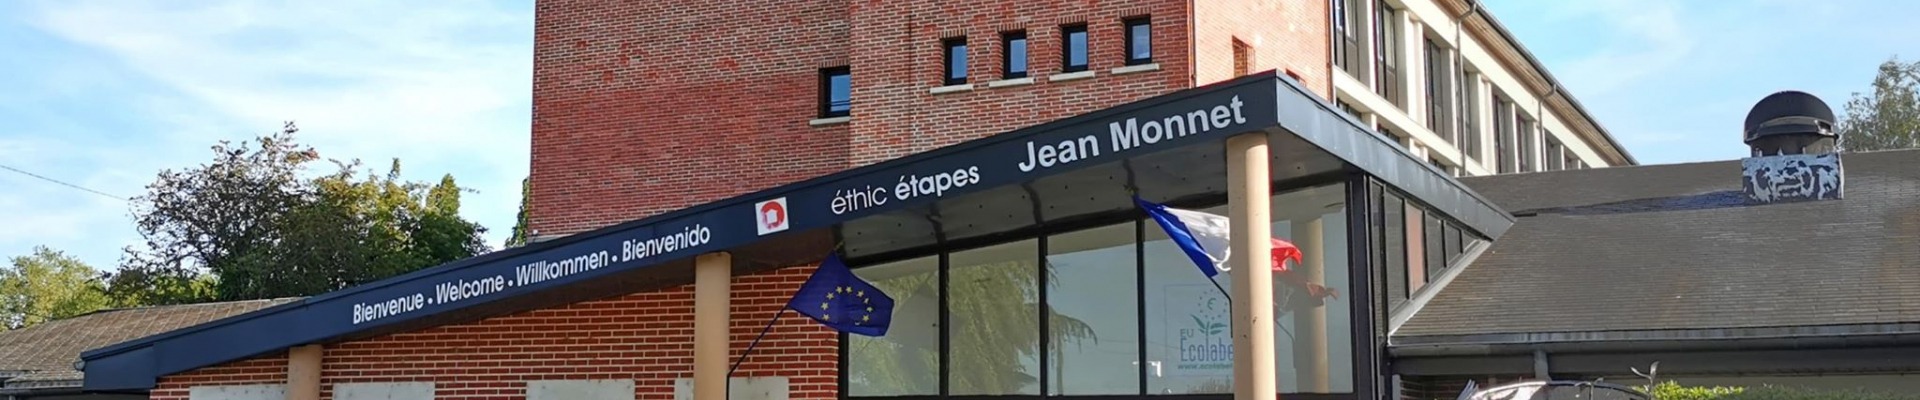 éthic étapes Jean Monnet vu de l'extérieur